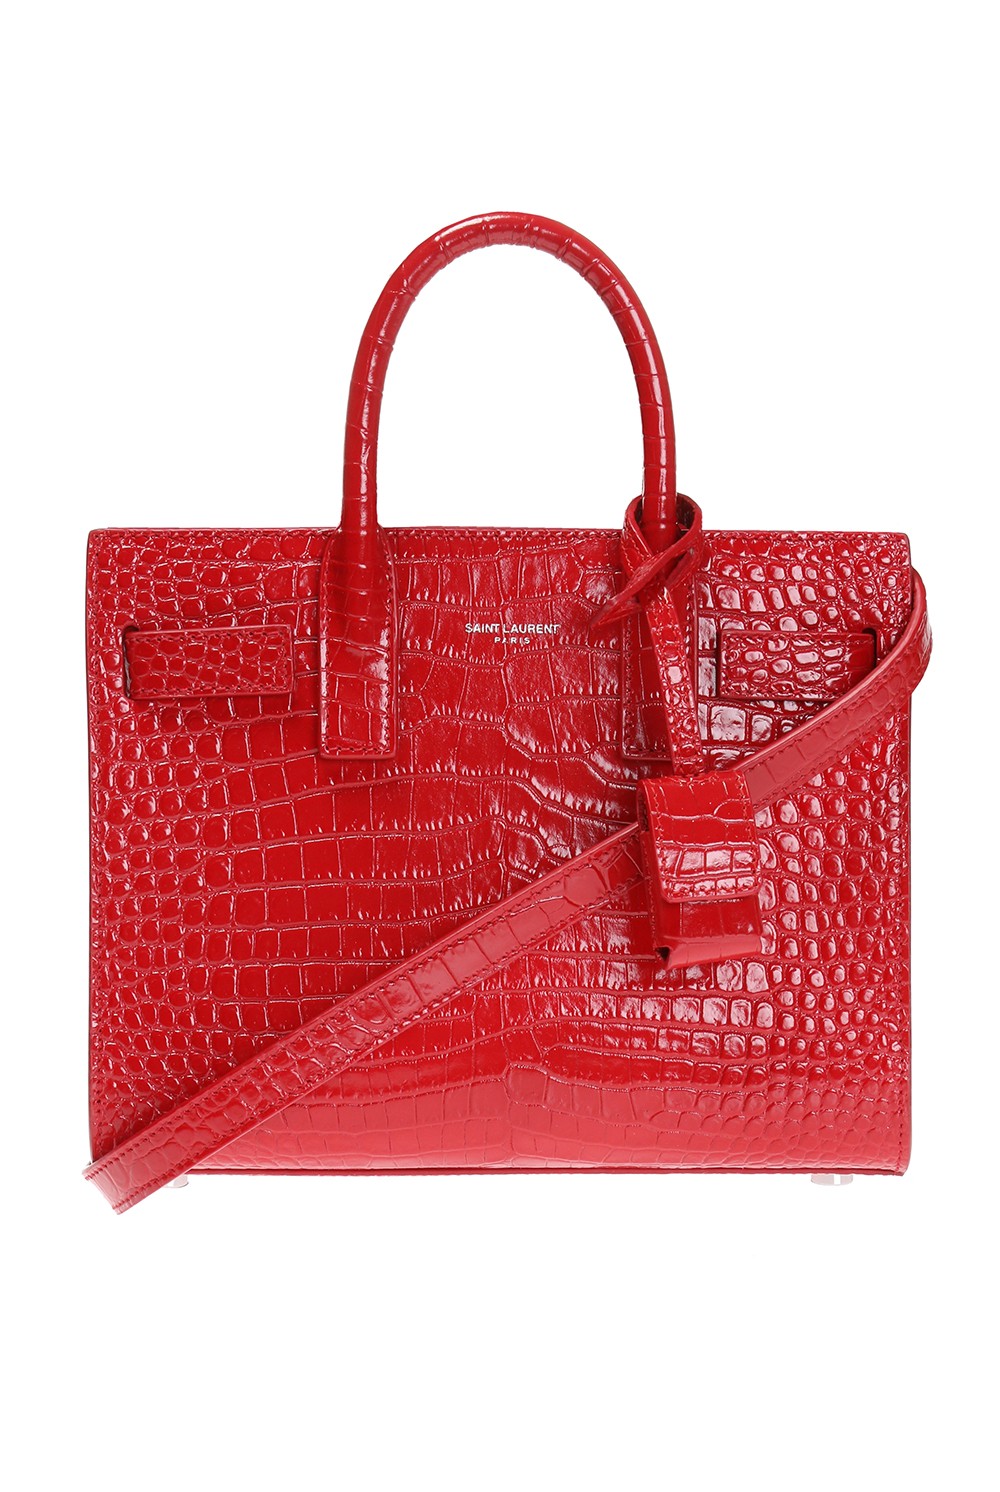 Saint Laurent Sac de Jour Crocodile-Stamped Satchel Bag, Red